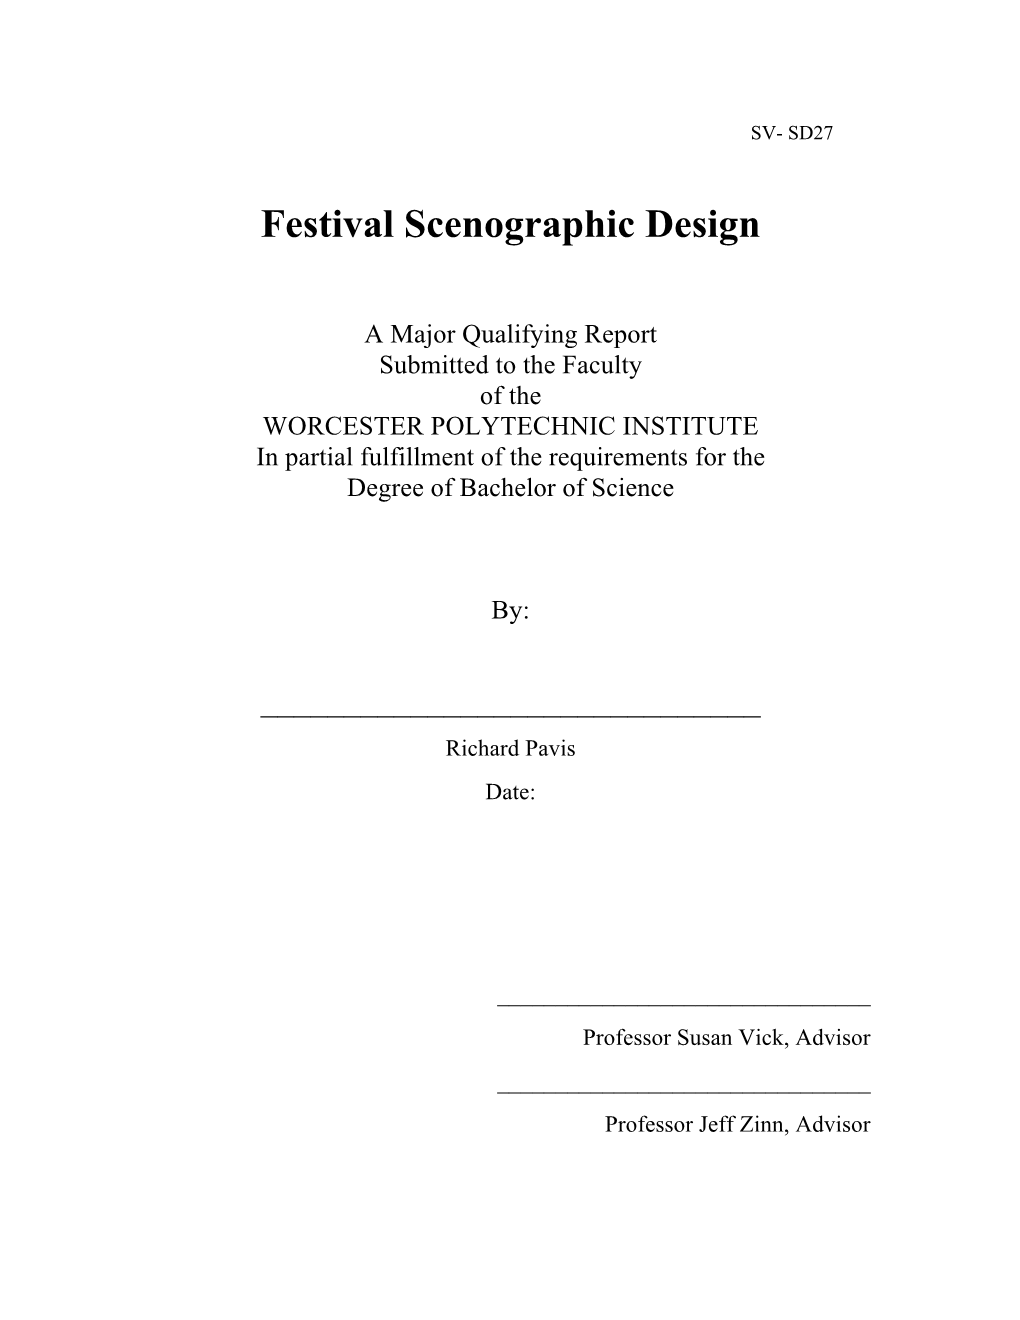 Festival Scenographic Design